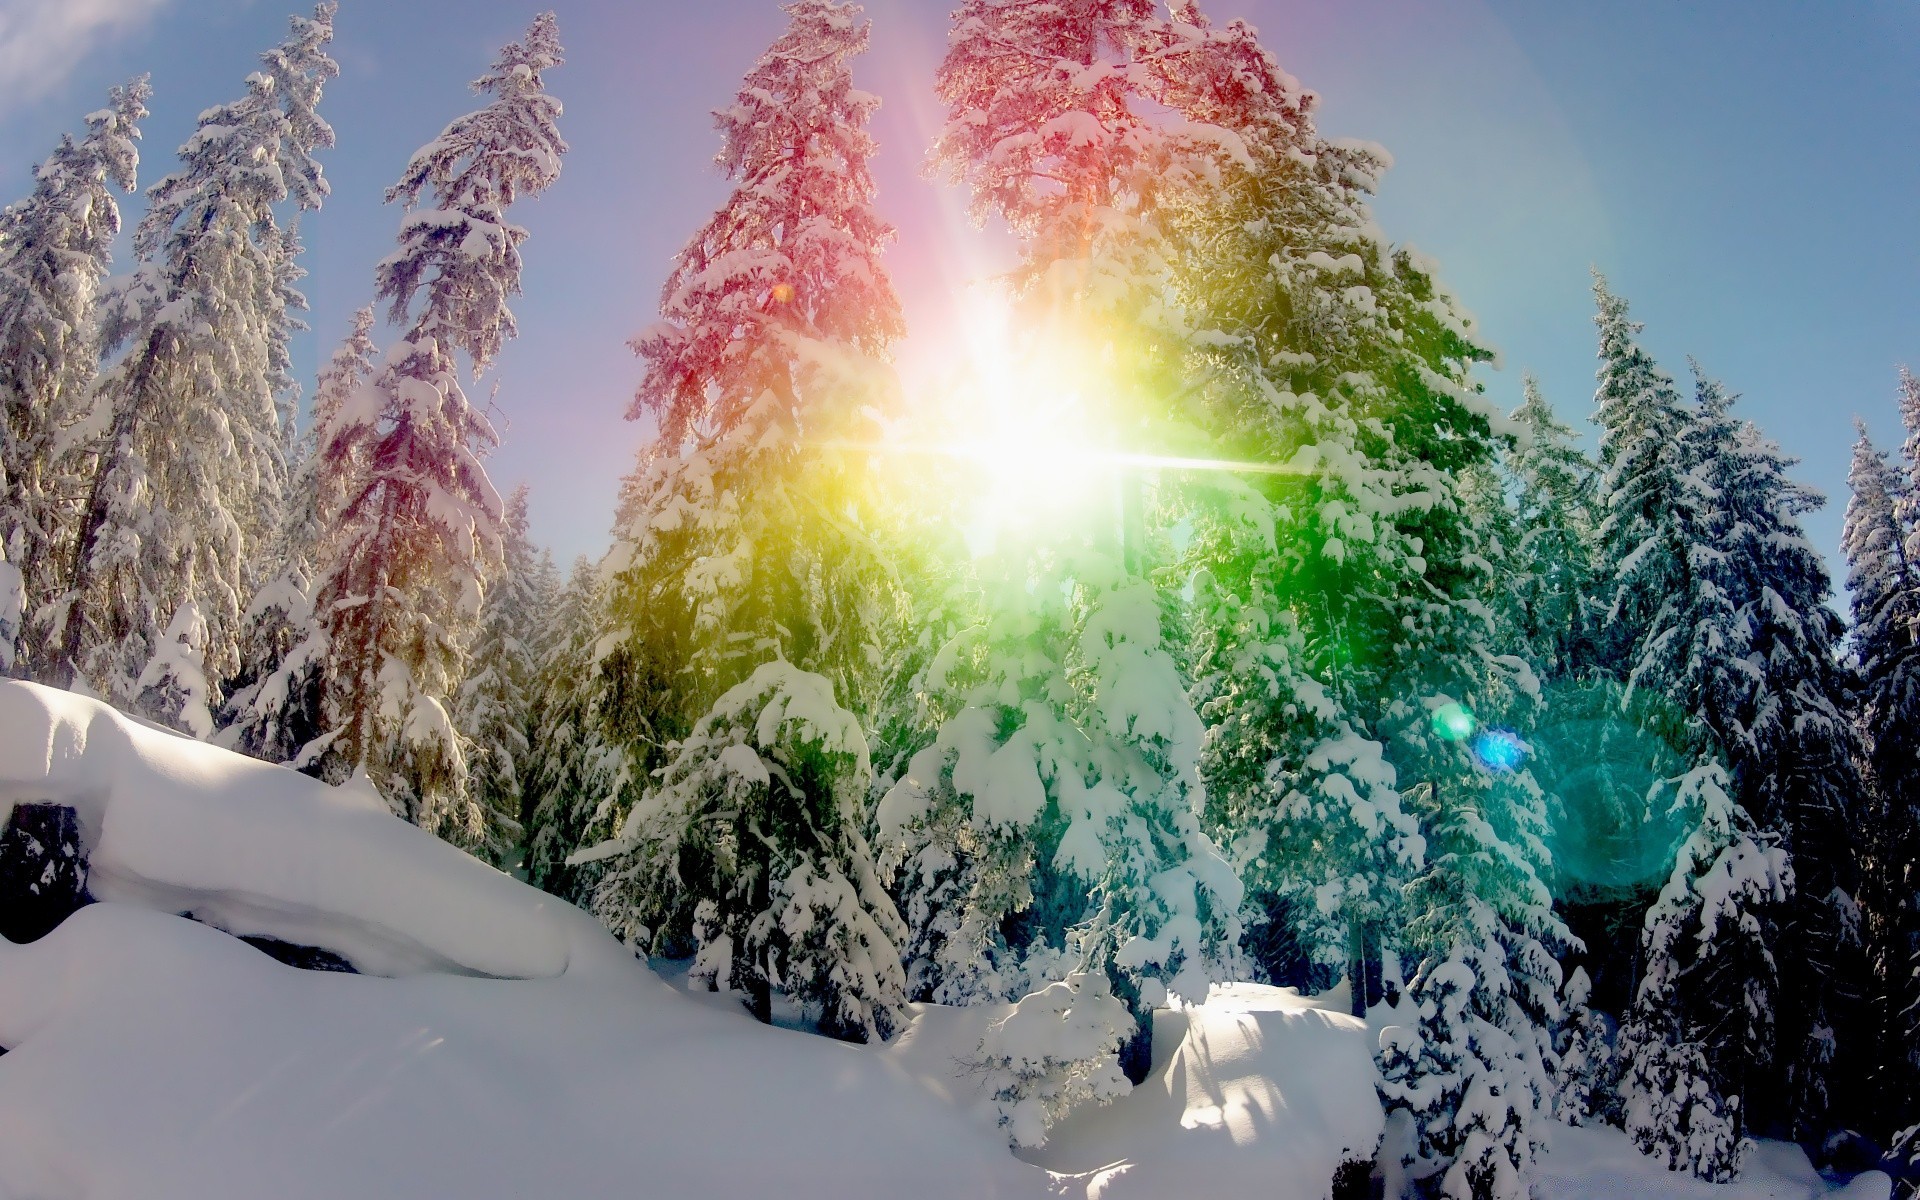 зима снег холодная природа пейзаж мороз сезон дерево хорошую погоду на открытом воздухе древесины небо замороженные горы лед живописный яркий погода путешествия